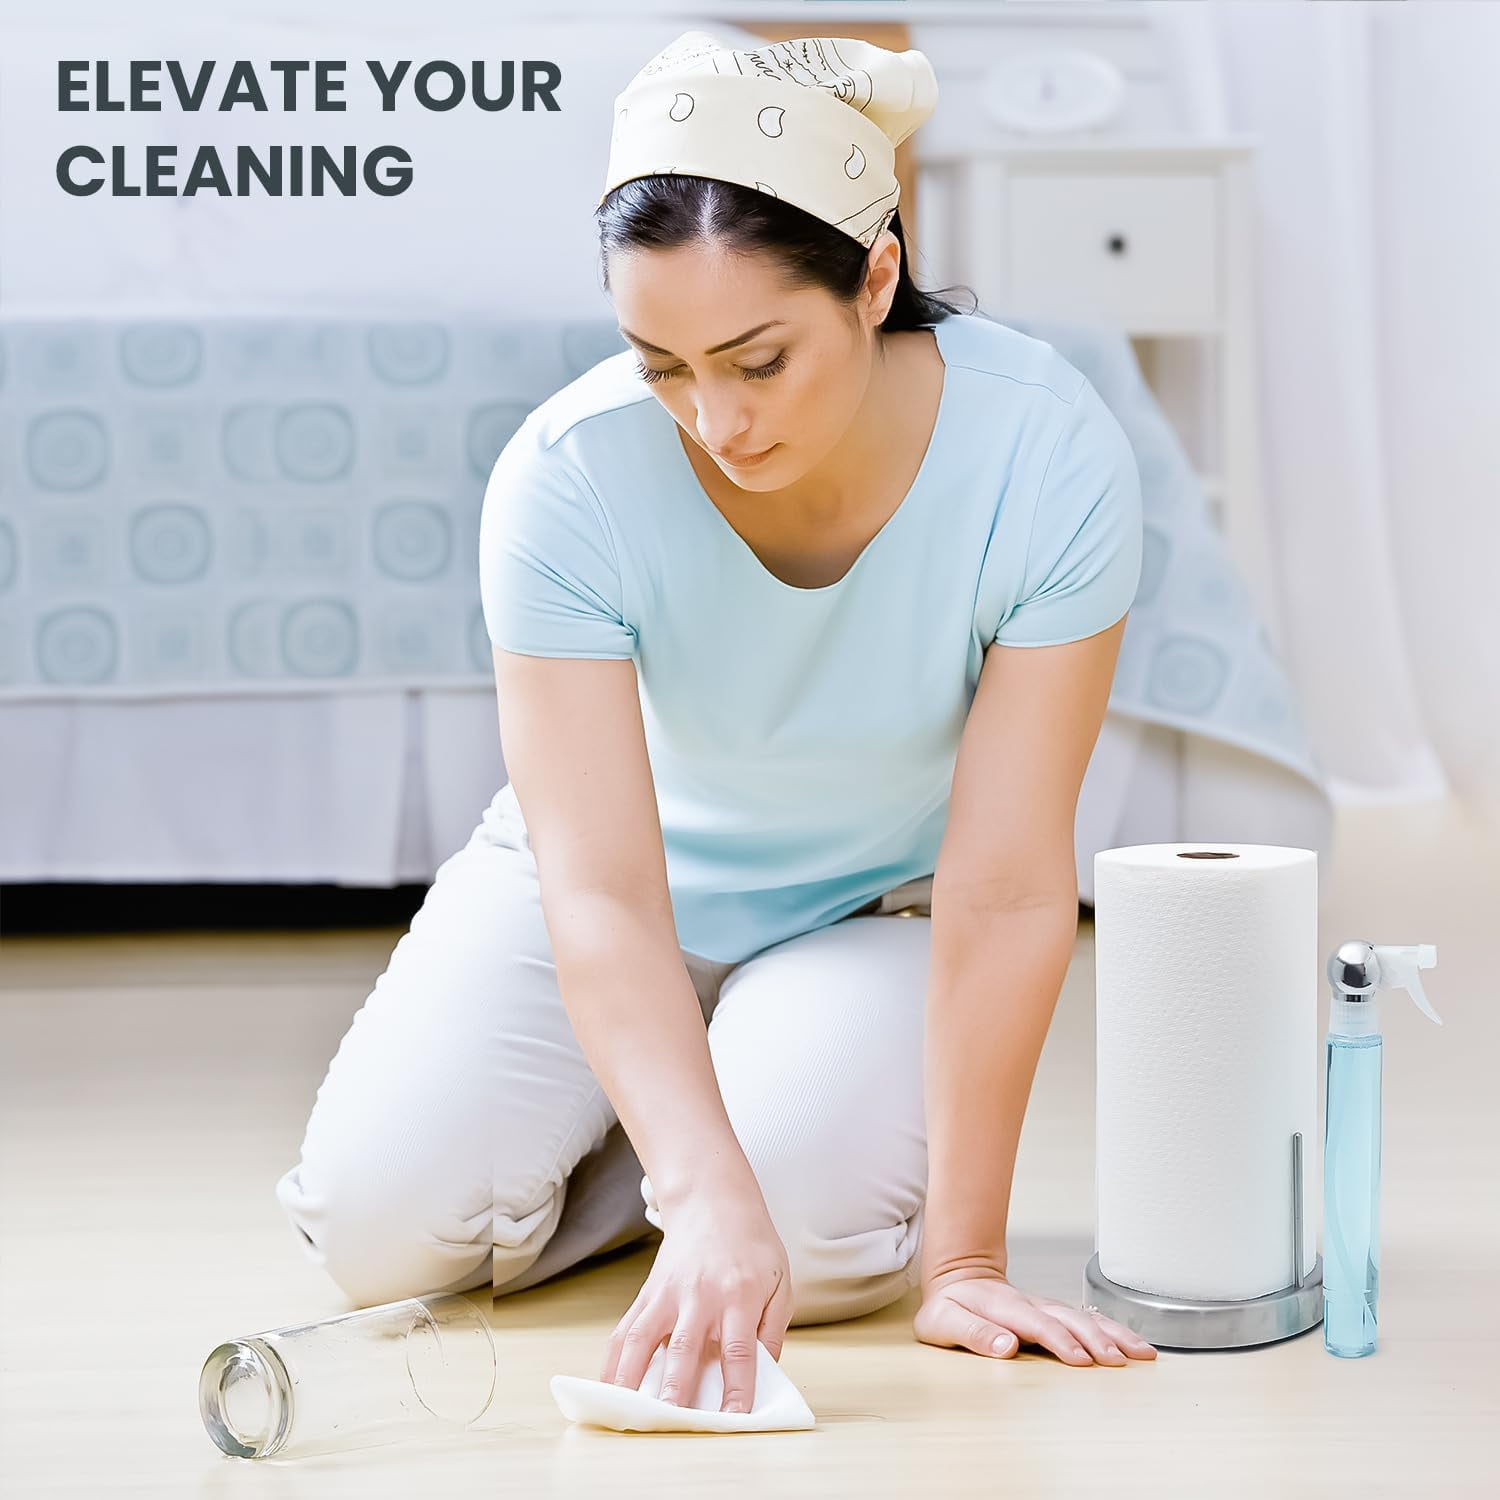 Everyday Solutions - Spray Paper Towel Holder (Regular)